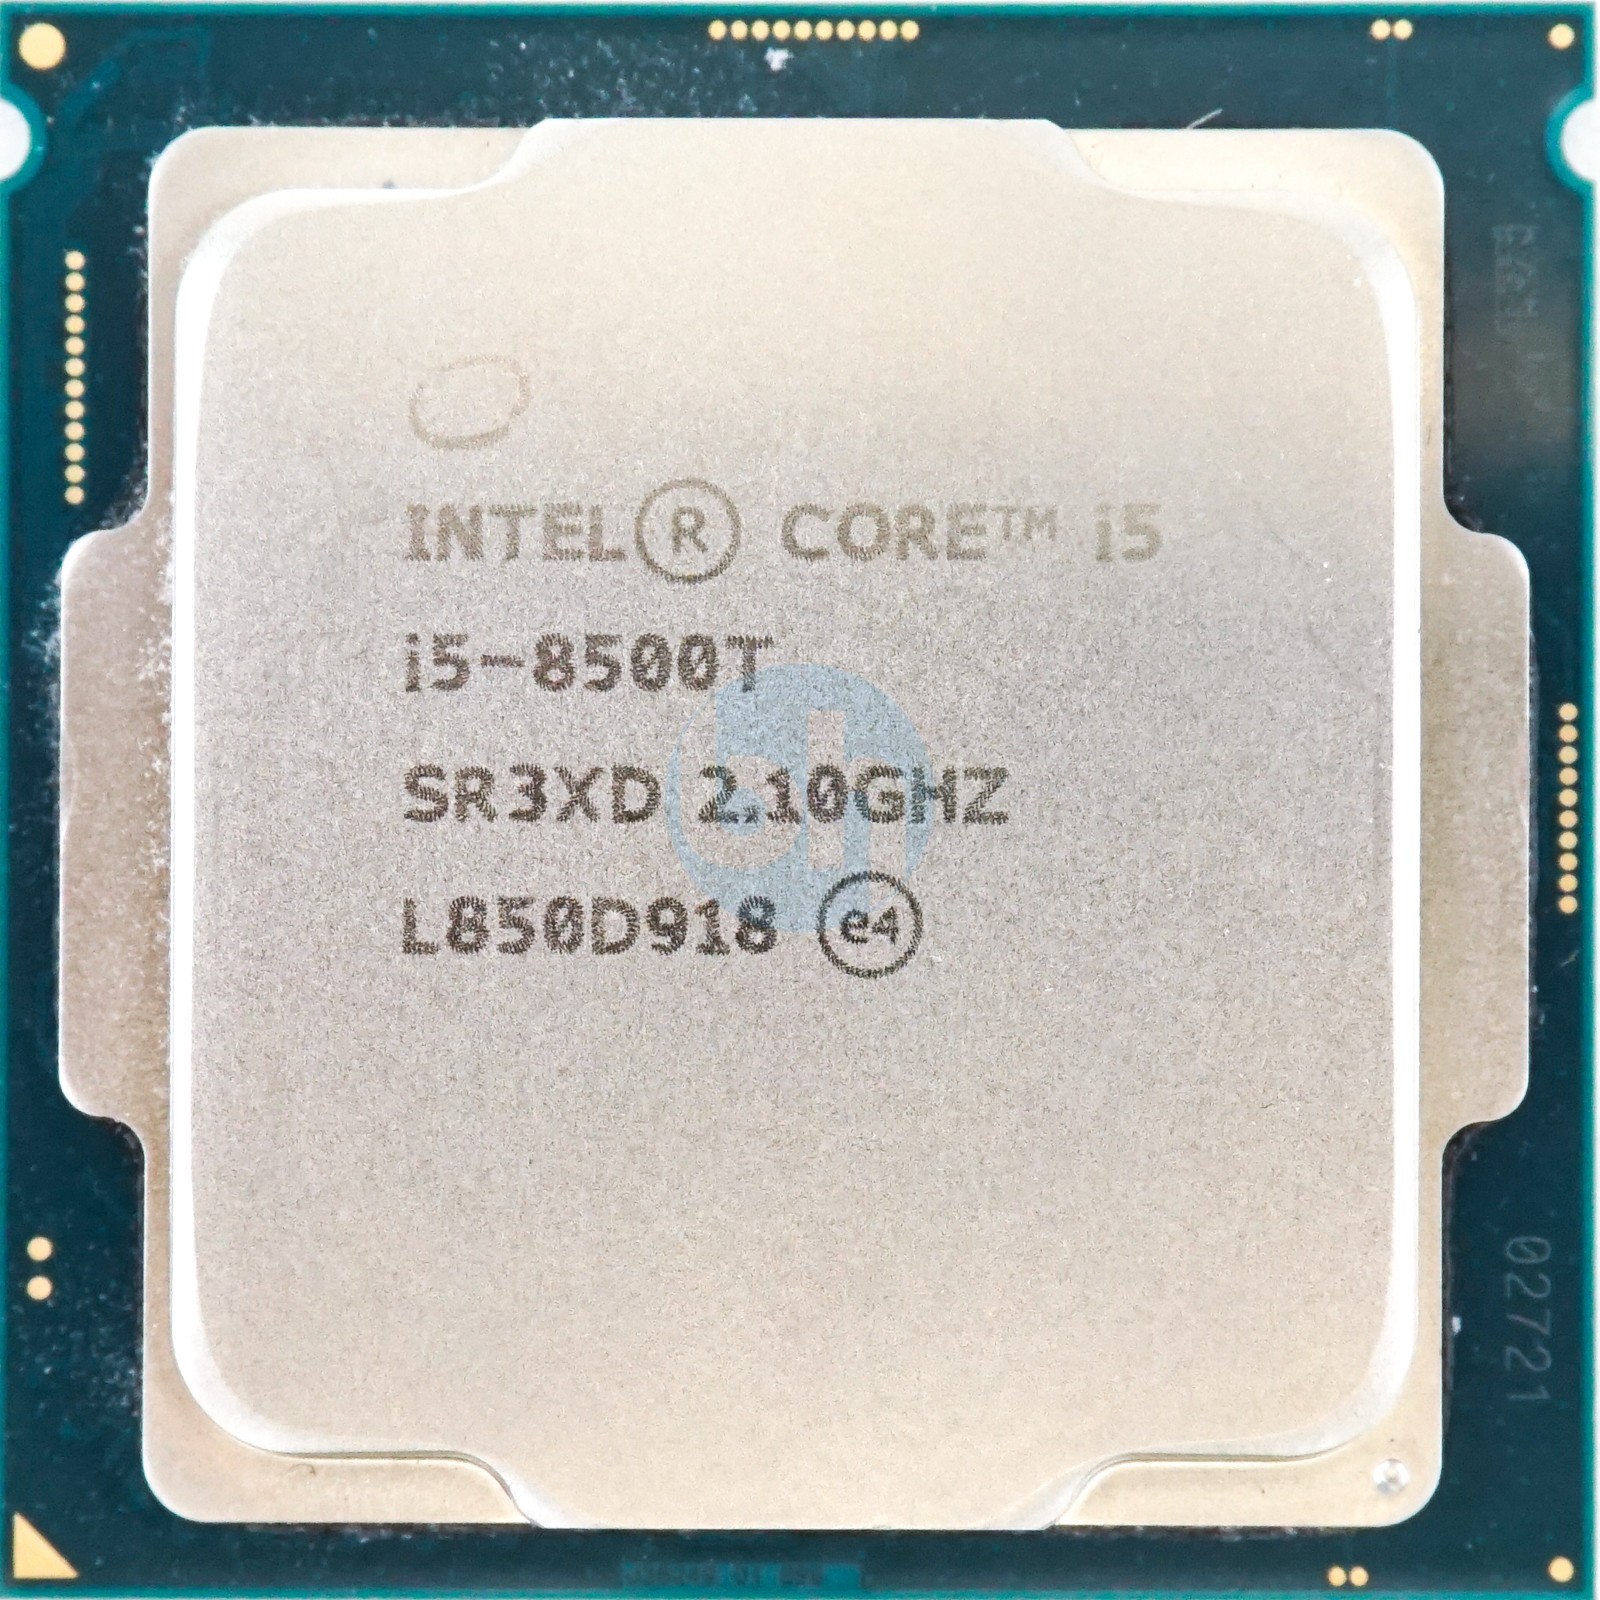 Intel Core i5-8500T (SR3XD) - 6-Core 2.10GHz LGA1151 9MB 25W CPU